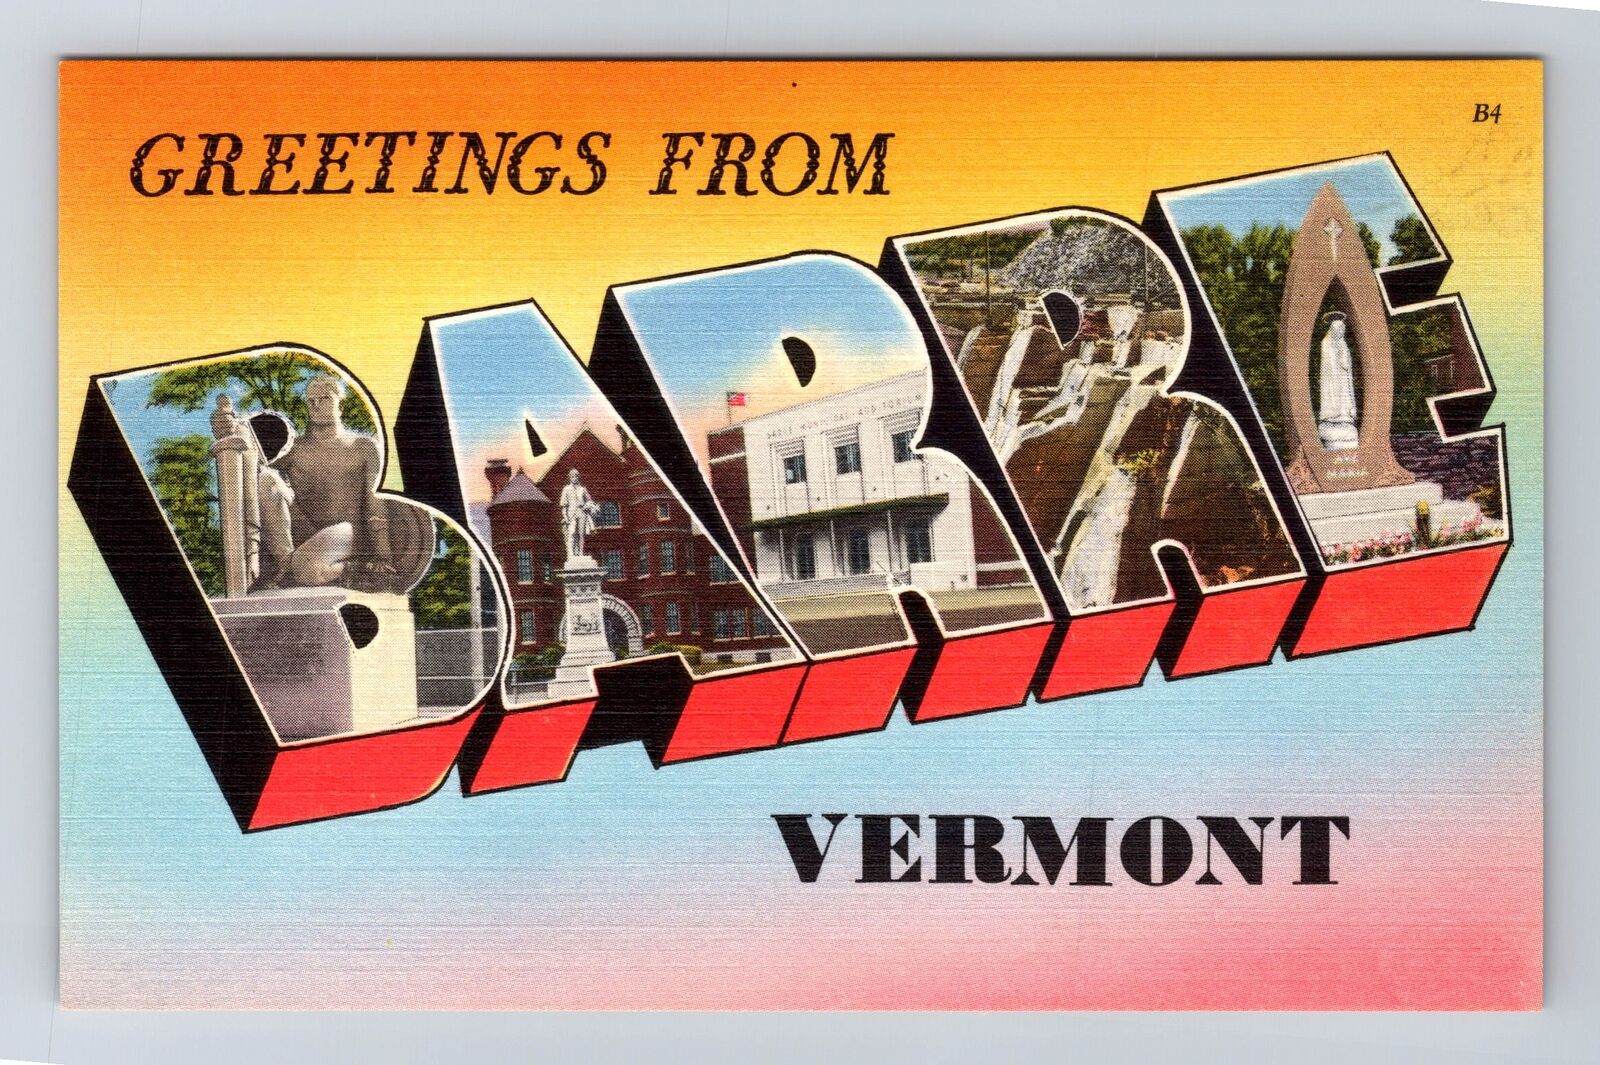 Barre VT-Vermont, LARGE LETTERS, Antique, Vintage Postcard